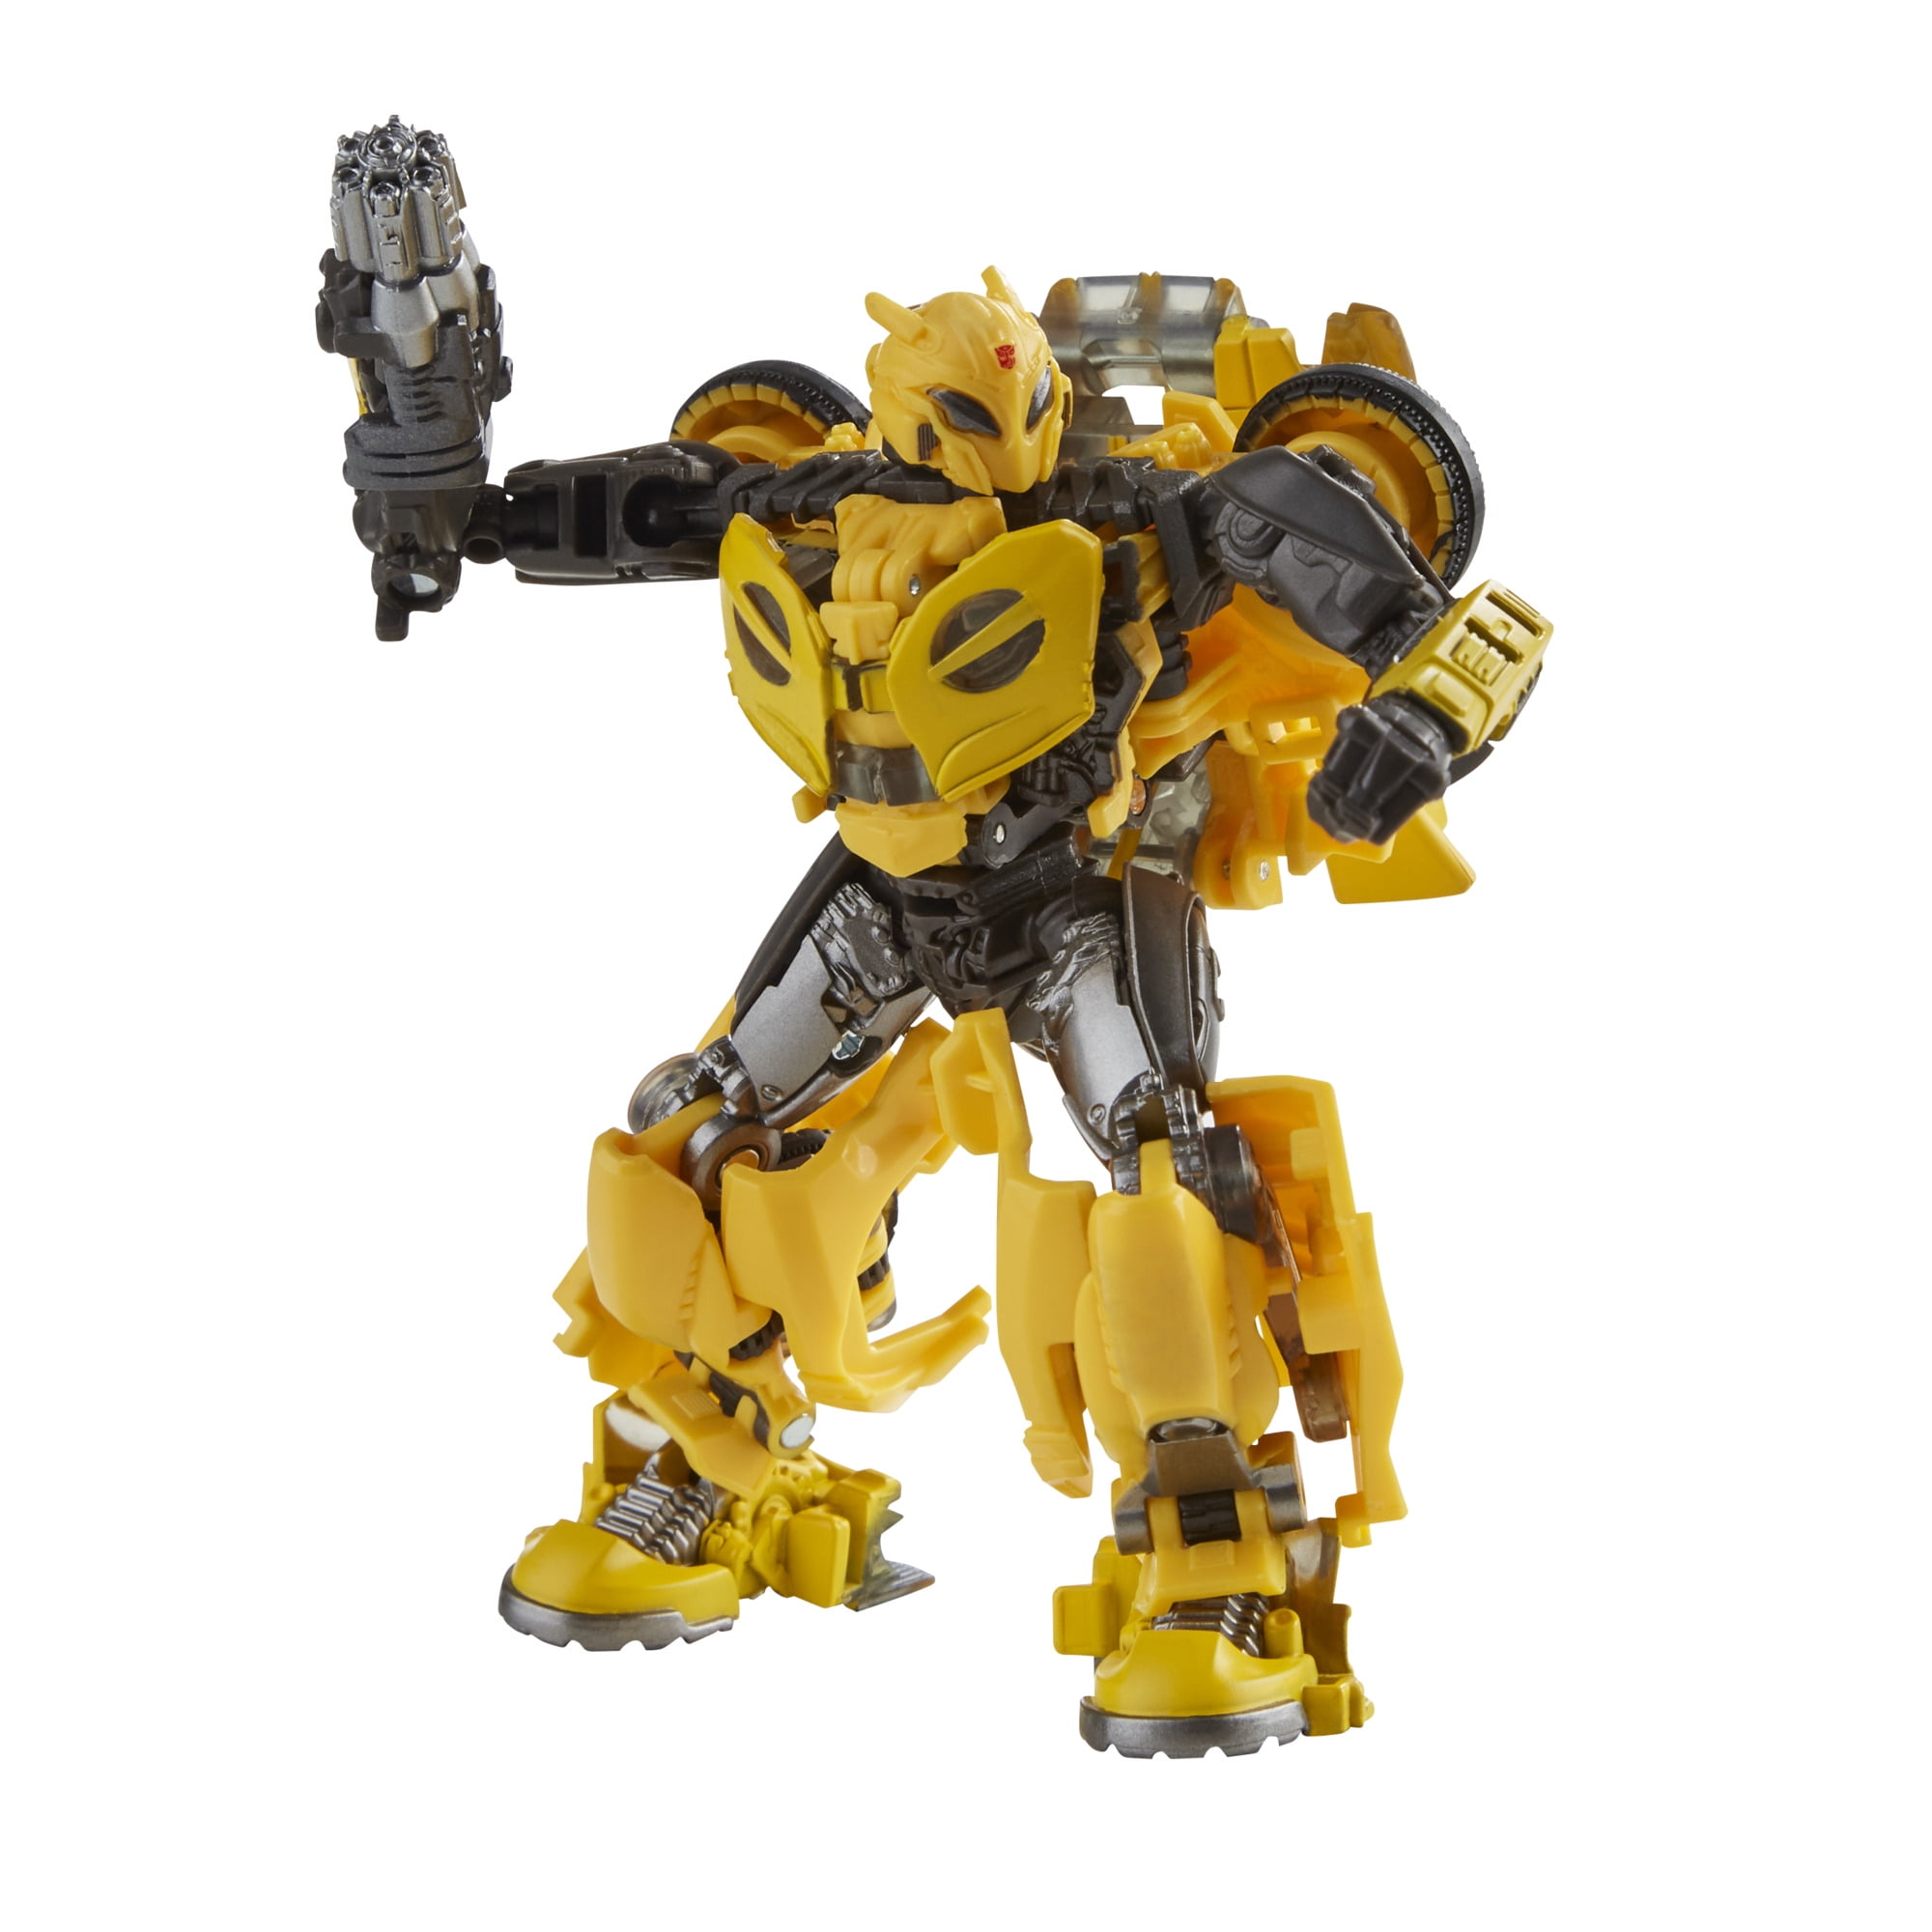 Transformers Studio Series Premier Deluxe Bumblebee Hasbro 